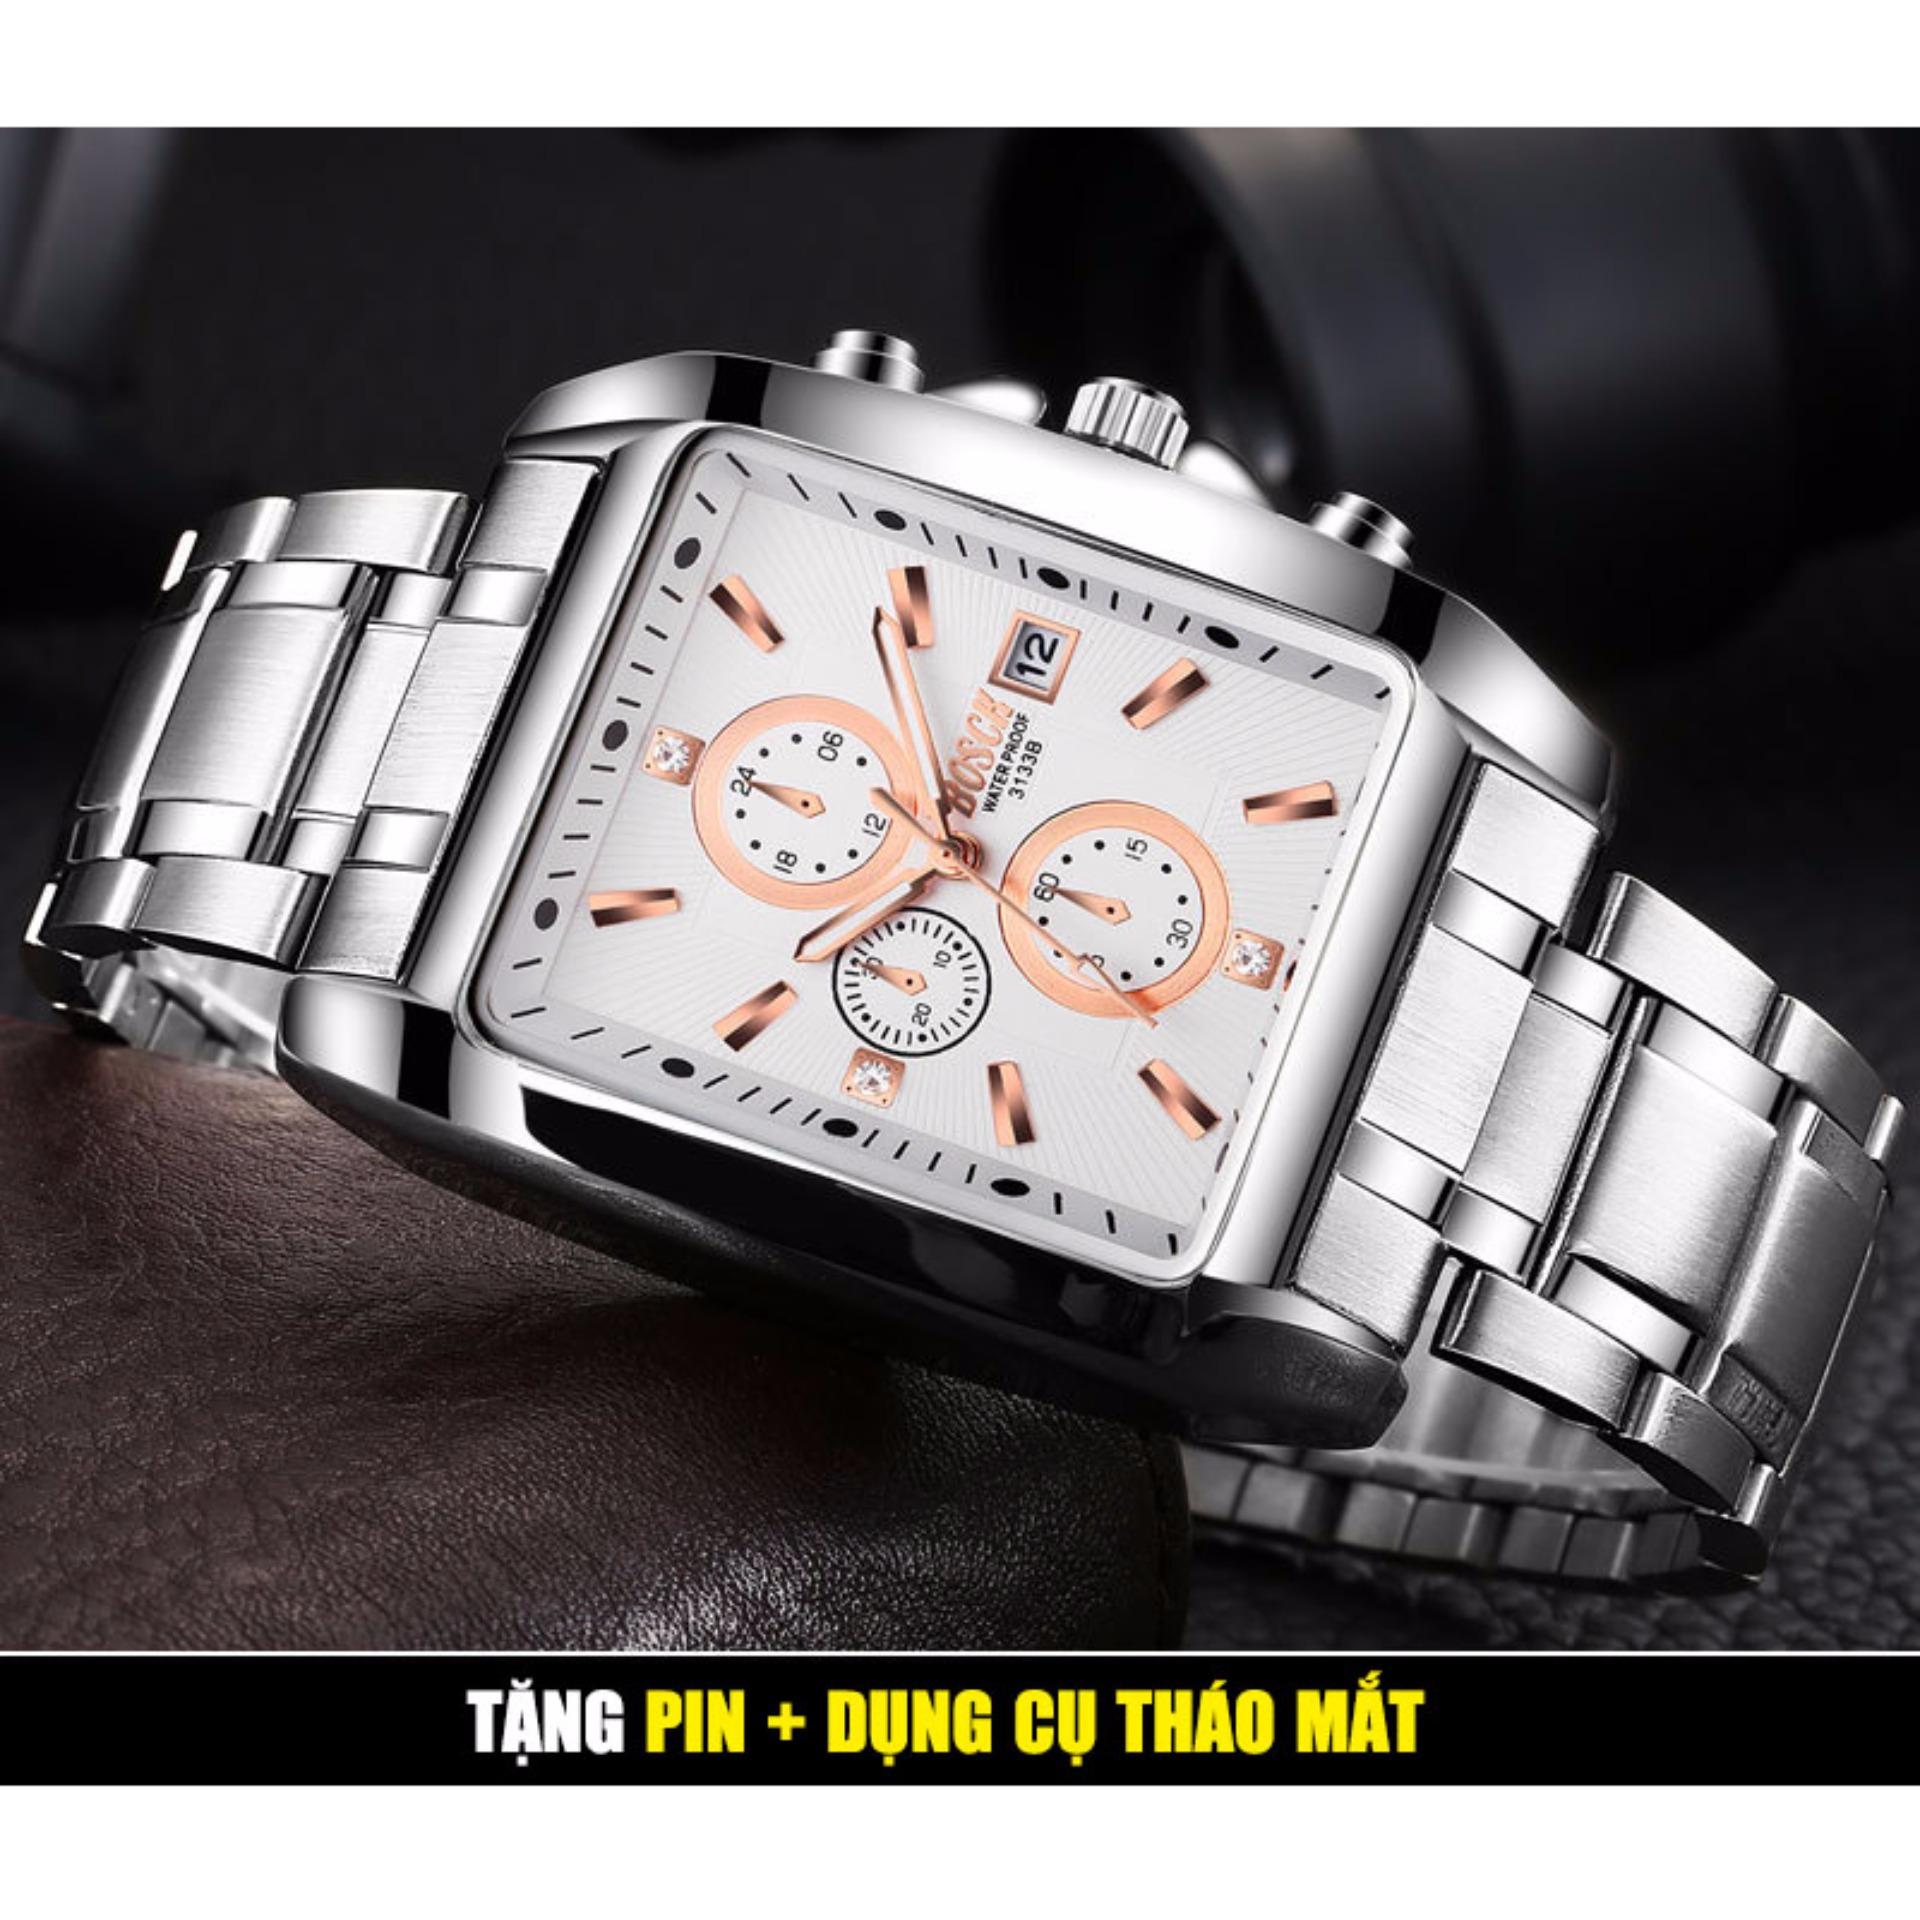 (NEW MODEL) Đồng hồ nam BOSCK 3133G dây thép bạc, mặt vuông, chống xước chống nước, lịch ngày + QUÀ...